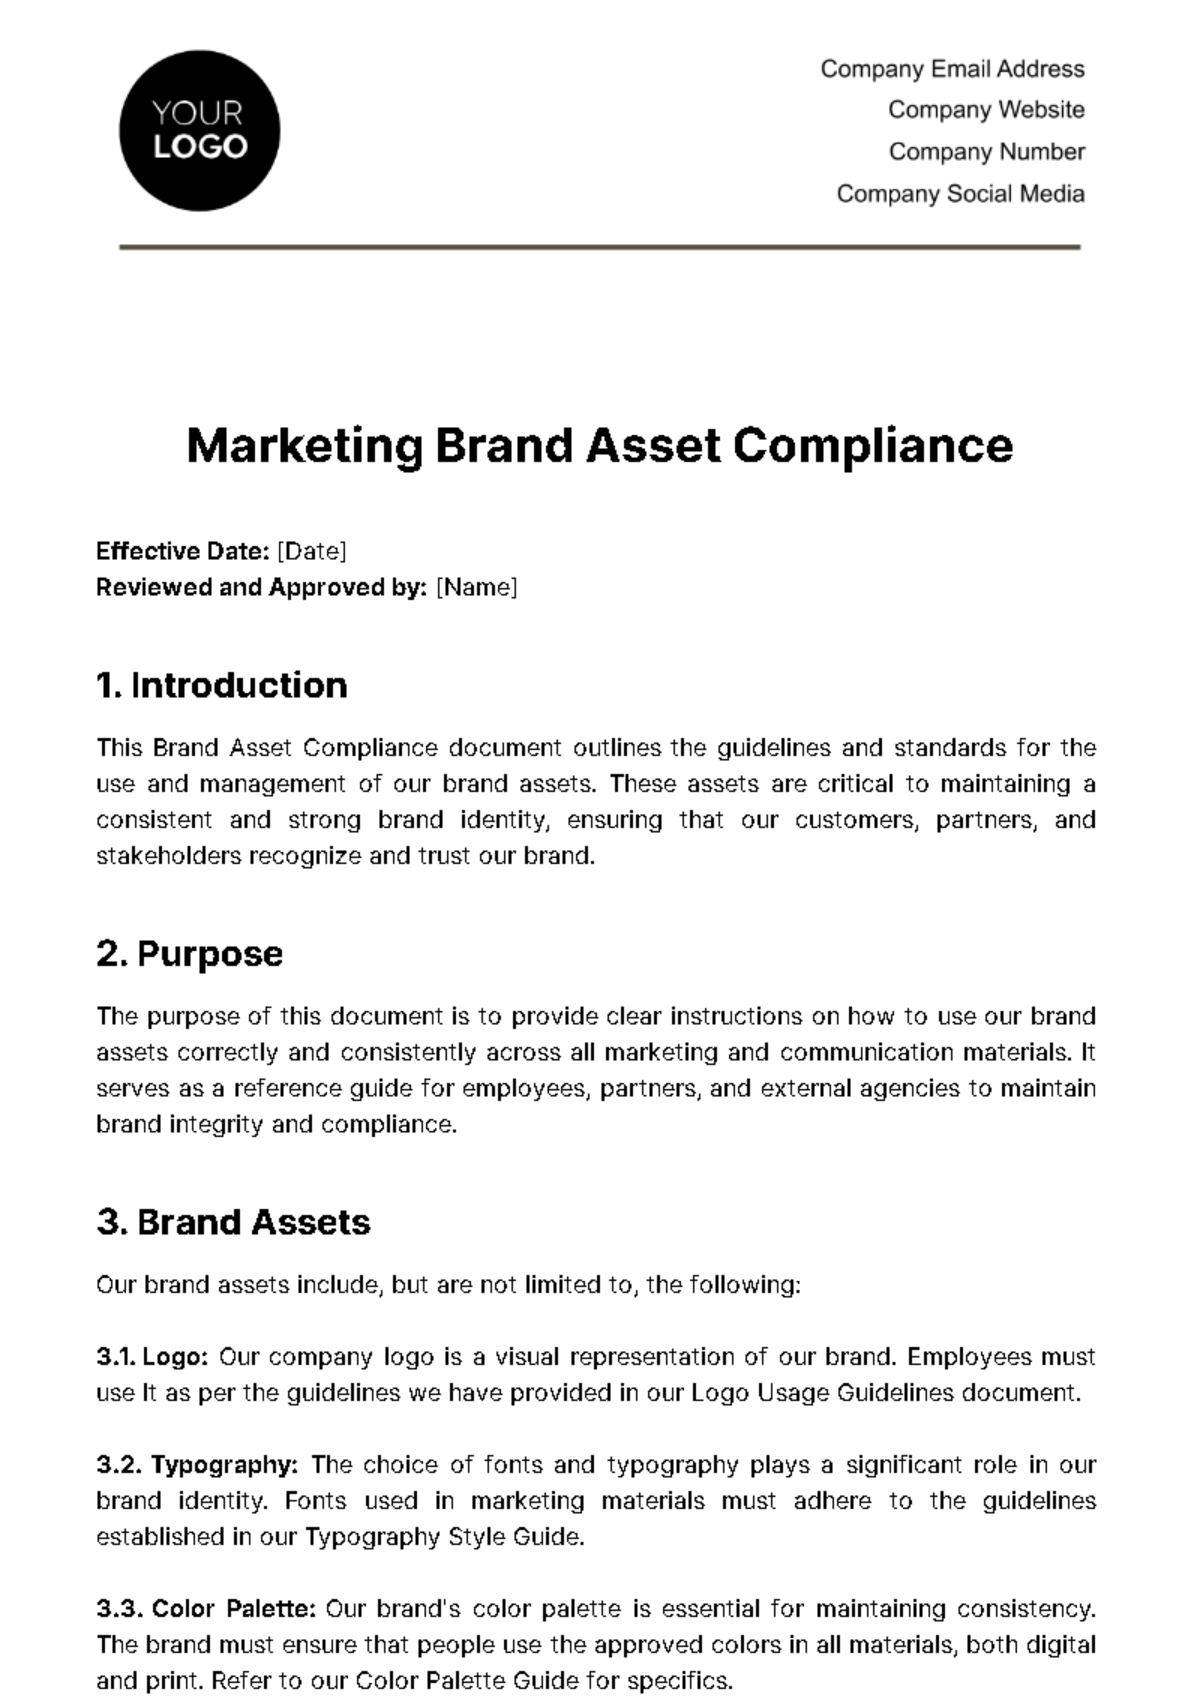 Marketing Brand Asset Compliance Template